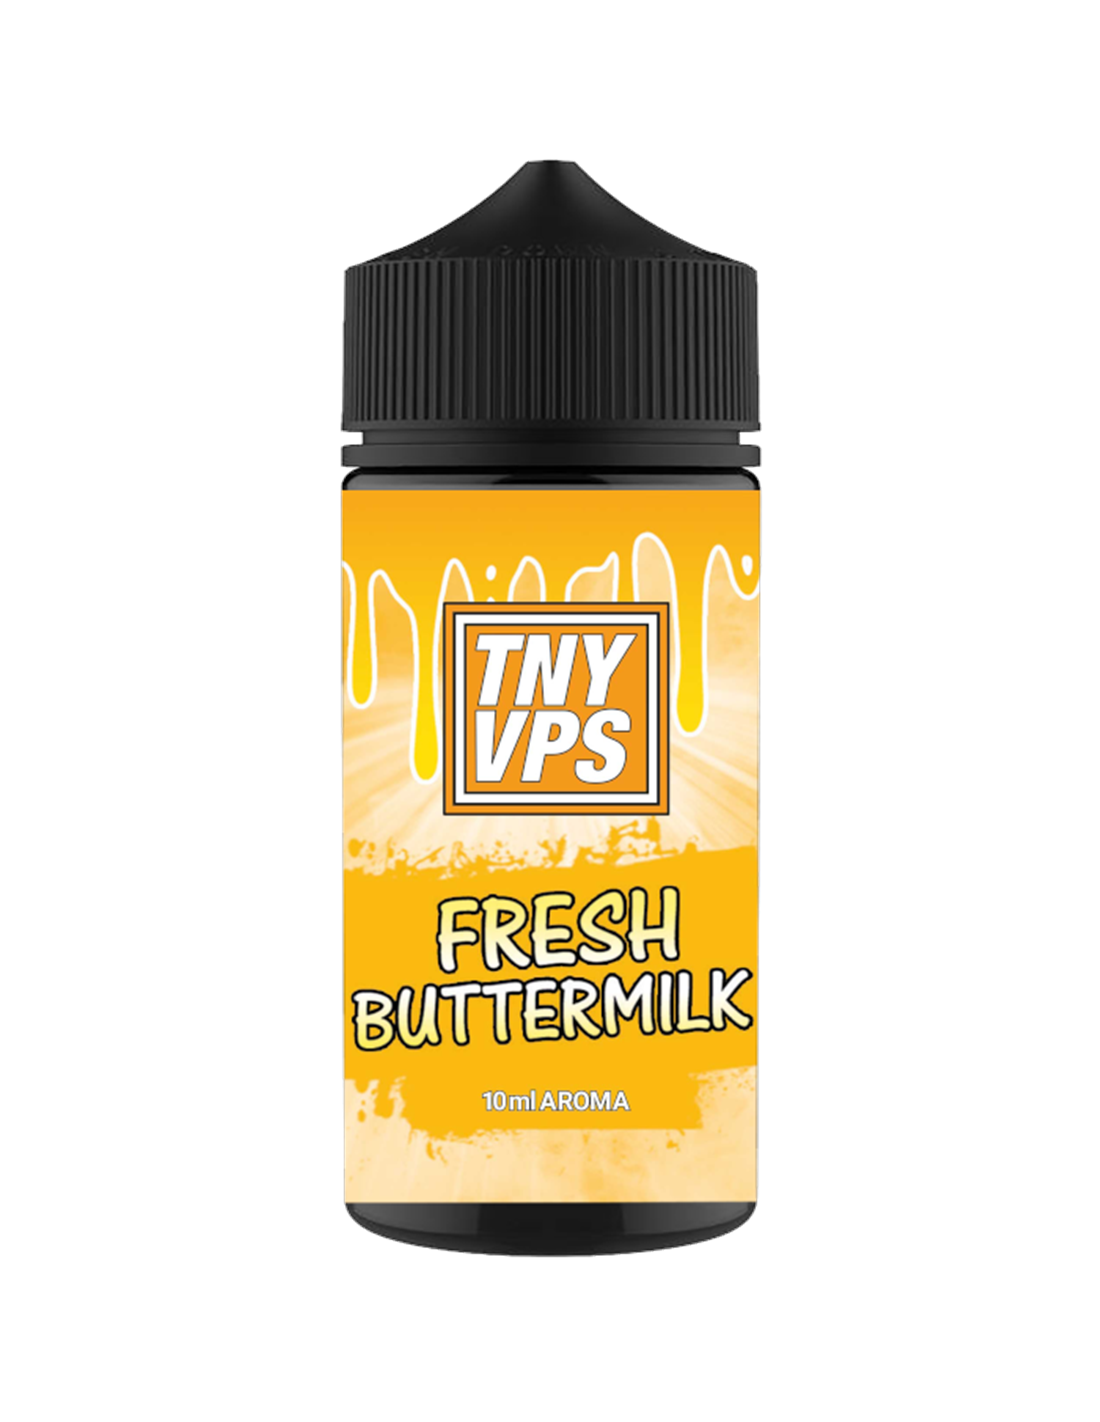 TNY VPS Fresh Buttermilk 10 ml Longfill